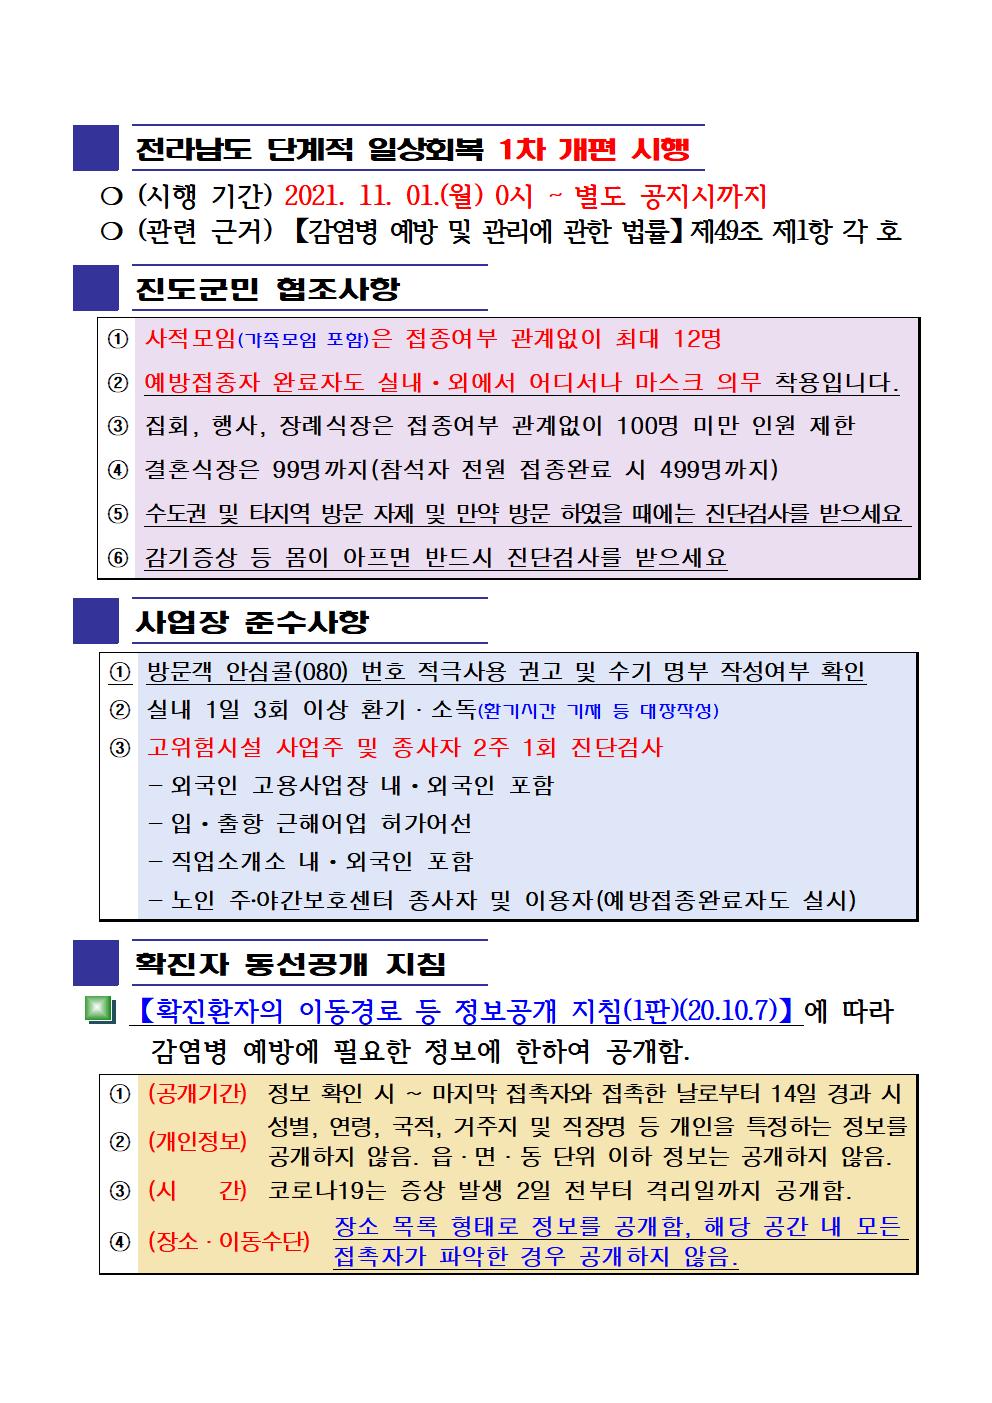 2021년 코로나 19 대응 일일상황보고(11월 30일 24시 기준) 첨부#2